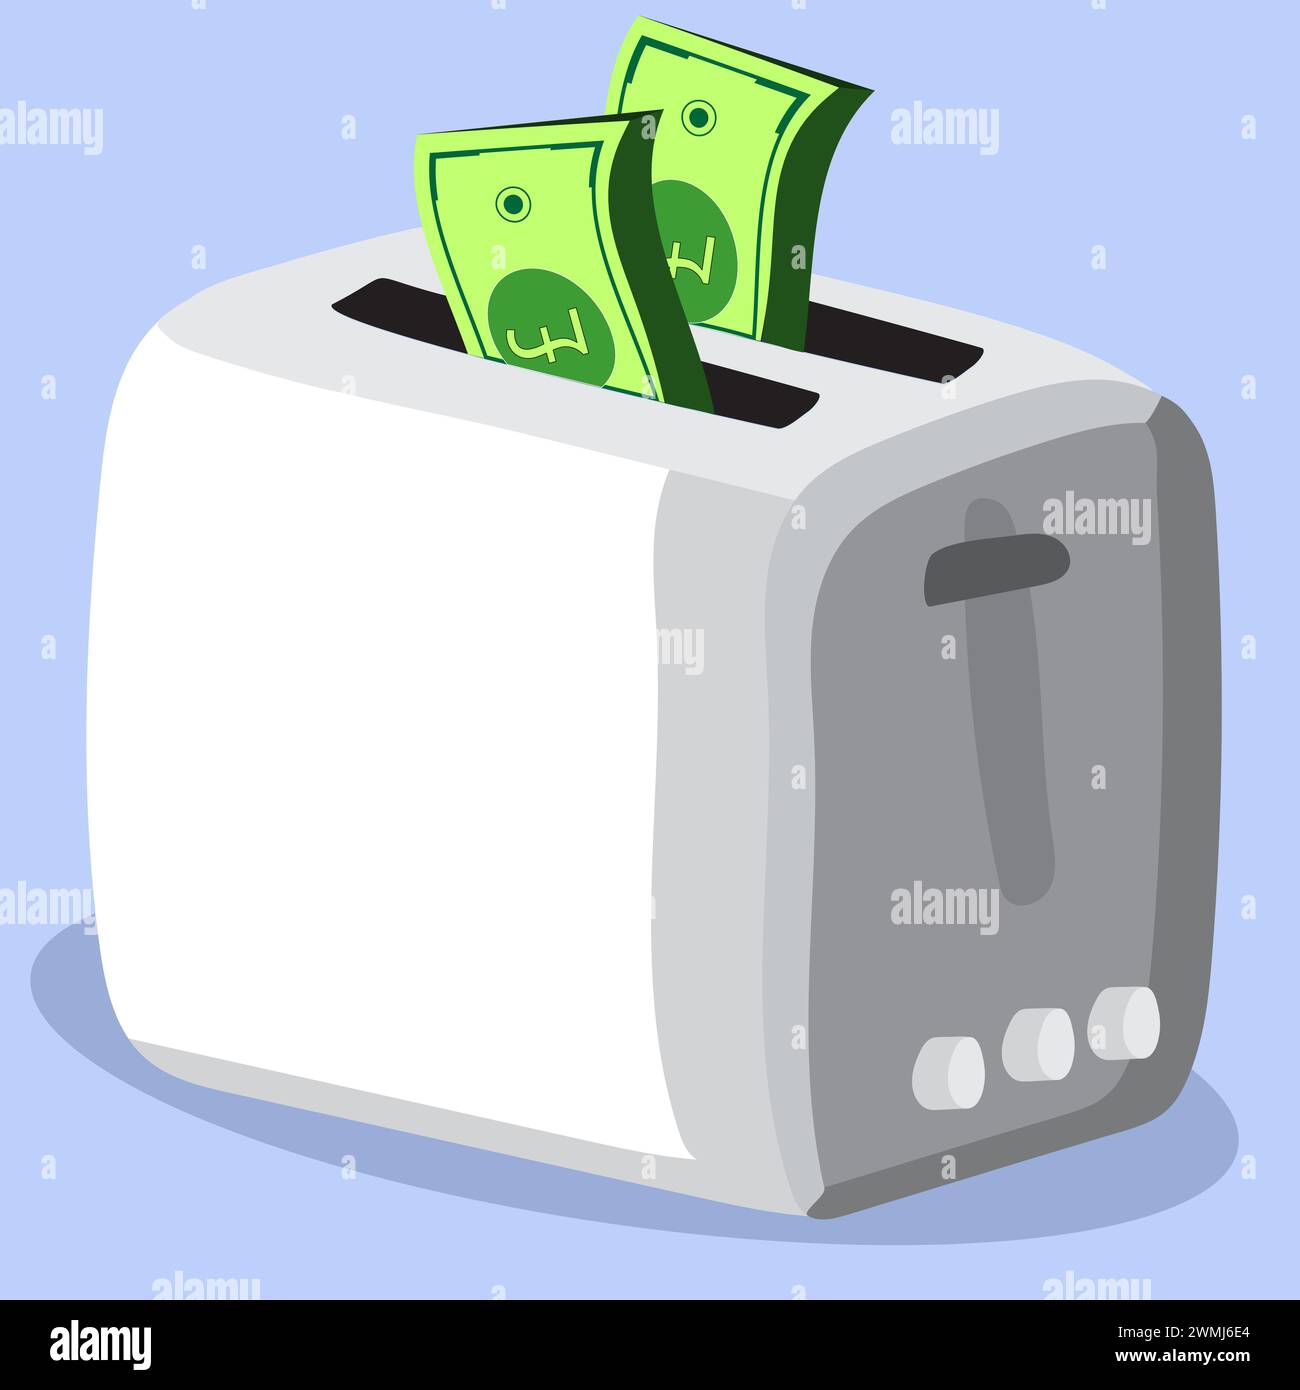 Représentation cartoon de la taxe sur le grille-pain en relation avec le recyclage des vieux grille-pain, argent dans le grille-pain, concept de taxe sur le grille-pain Illustration de Vecteur